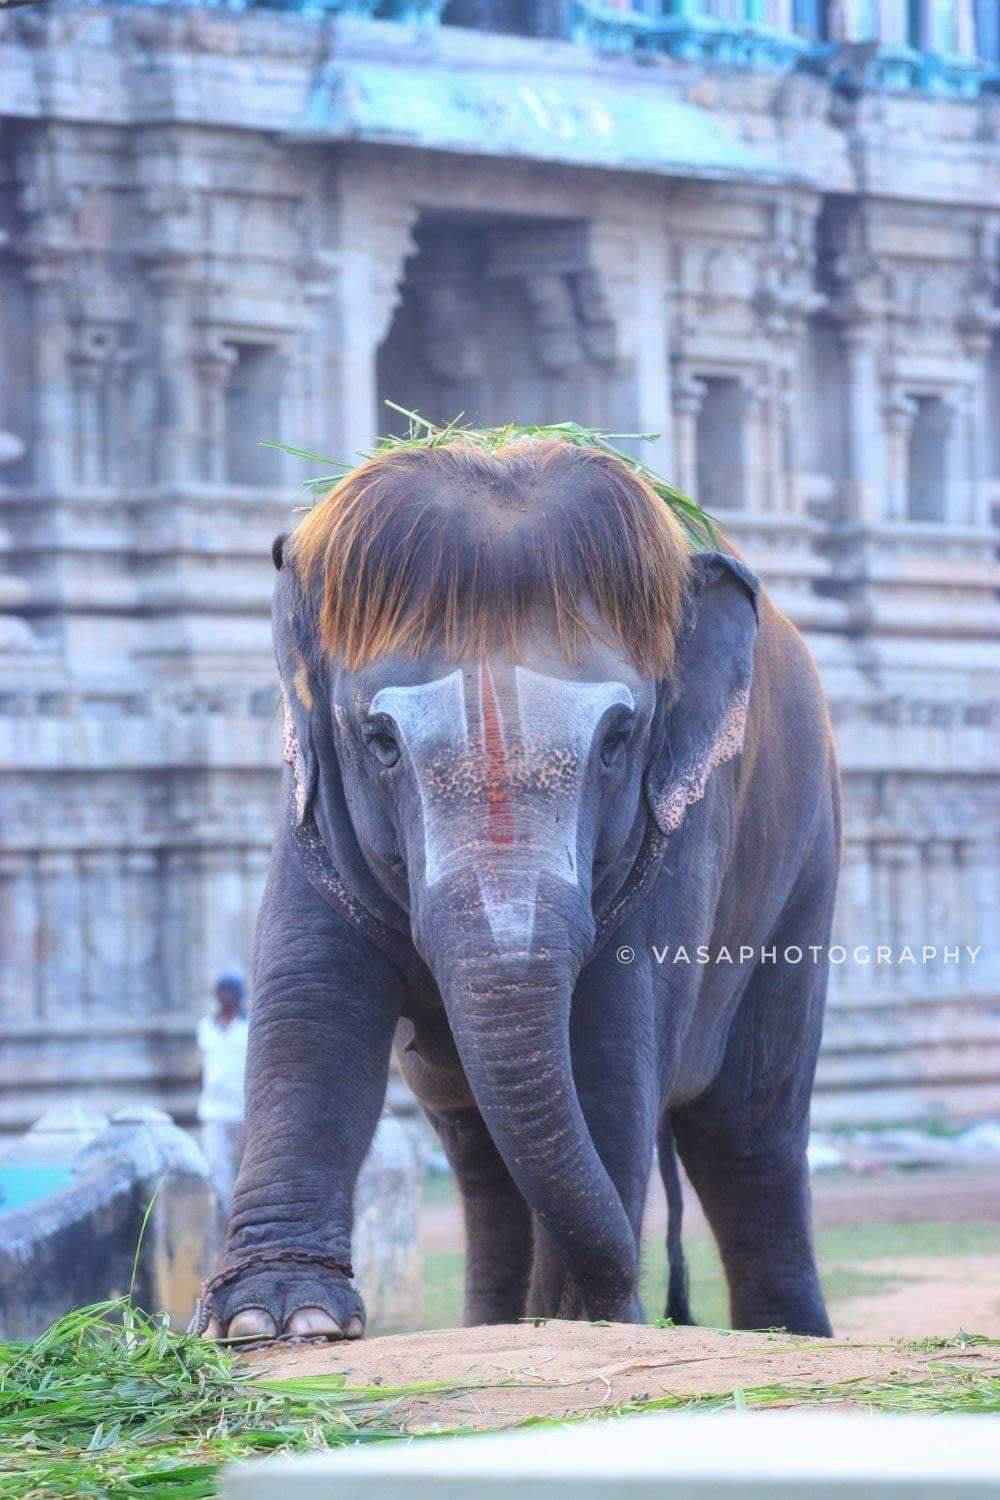 PsBattle: This dashing Indian Elephant